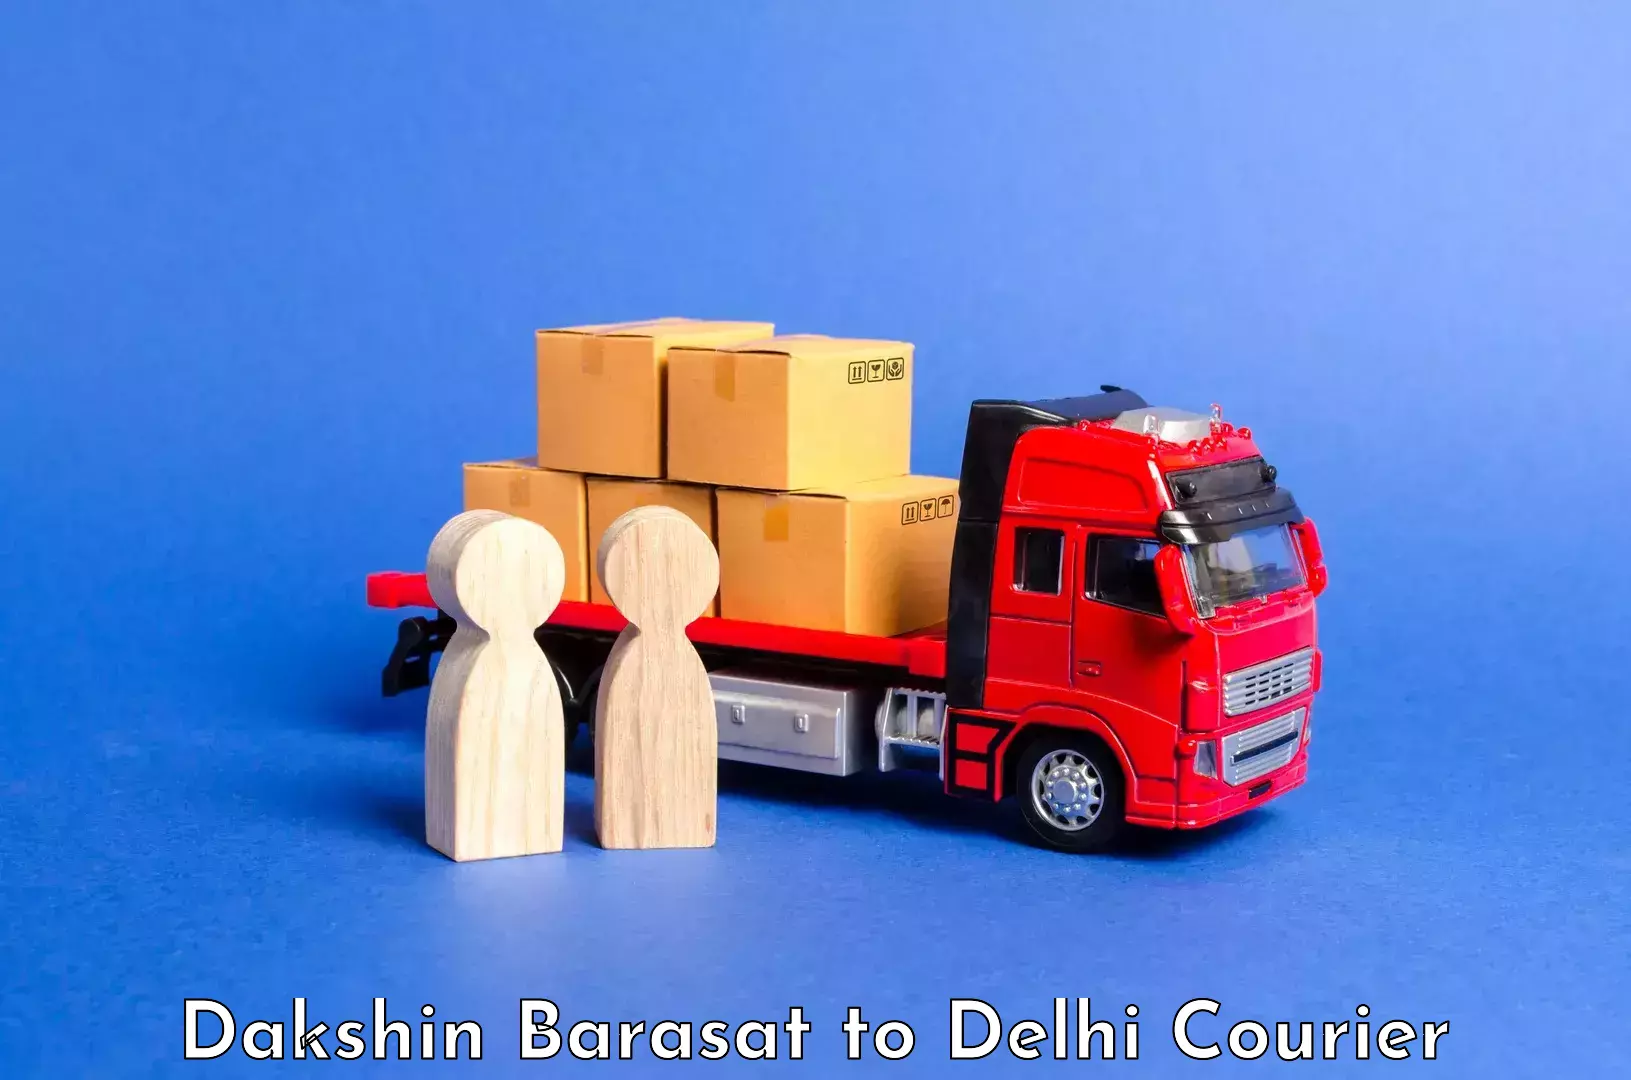 Luggage transport consultancy Dakshin Barasat to Krishna Nagar